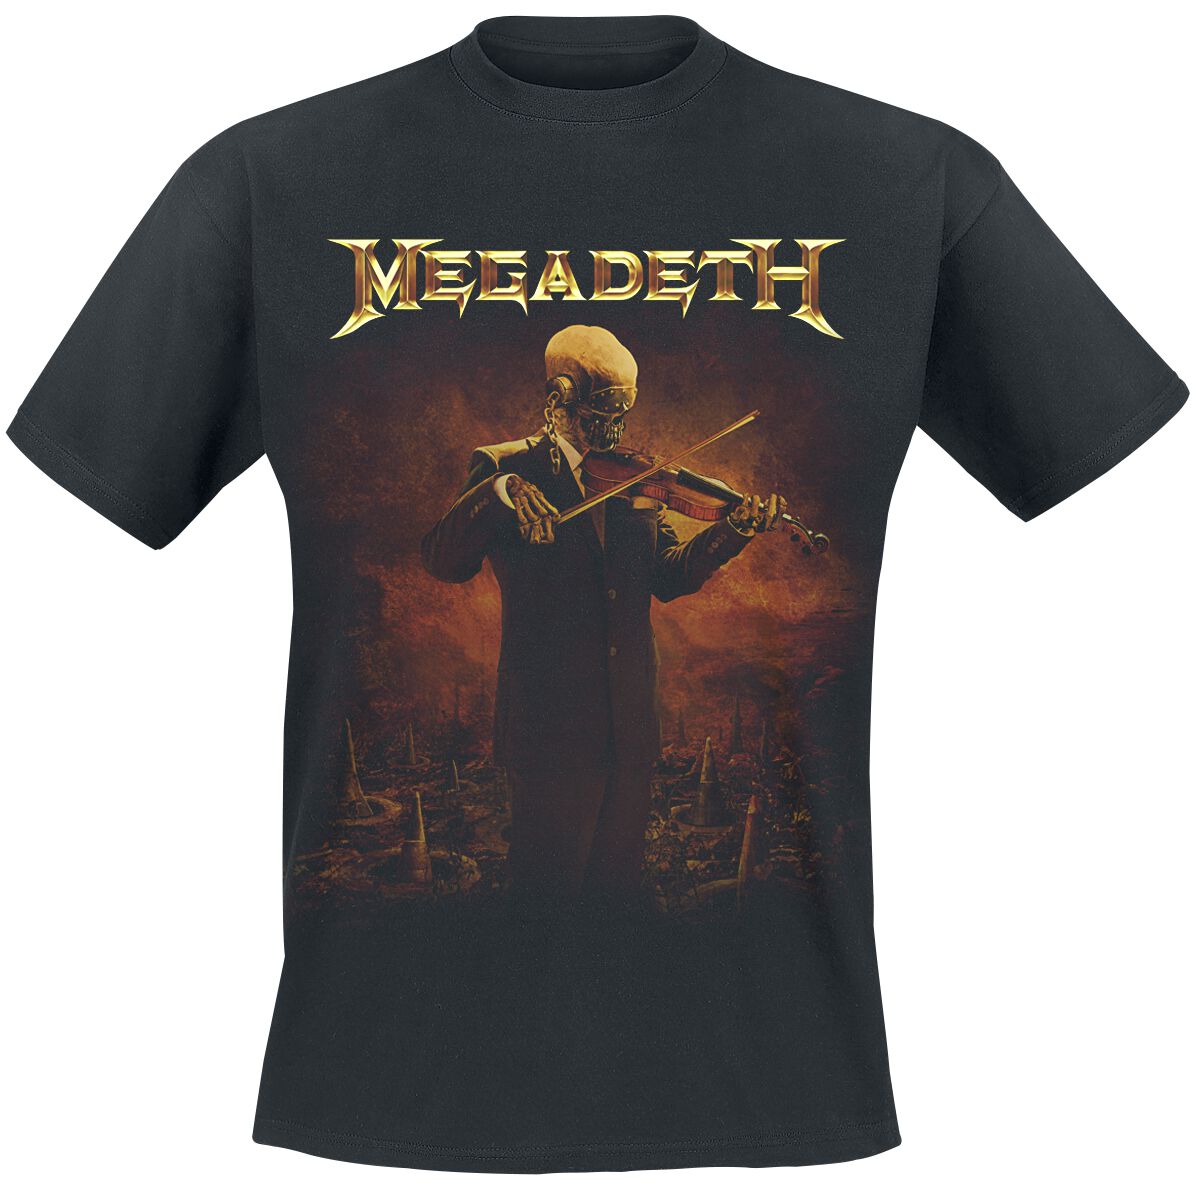 Megadeth T-Shirt - Symphony For Destruction - S bis XXL - für Männer - Größe S - schwarz  - Lizenziertes Merchandise!